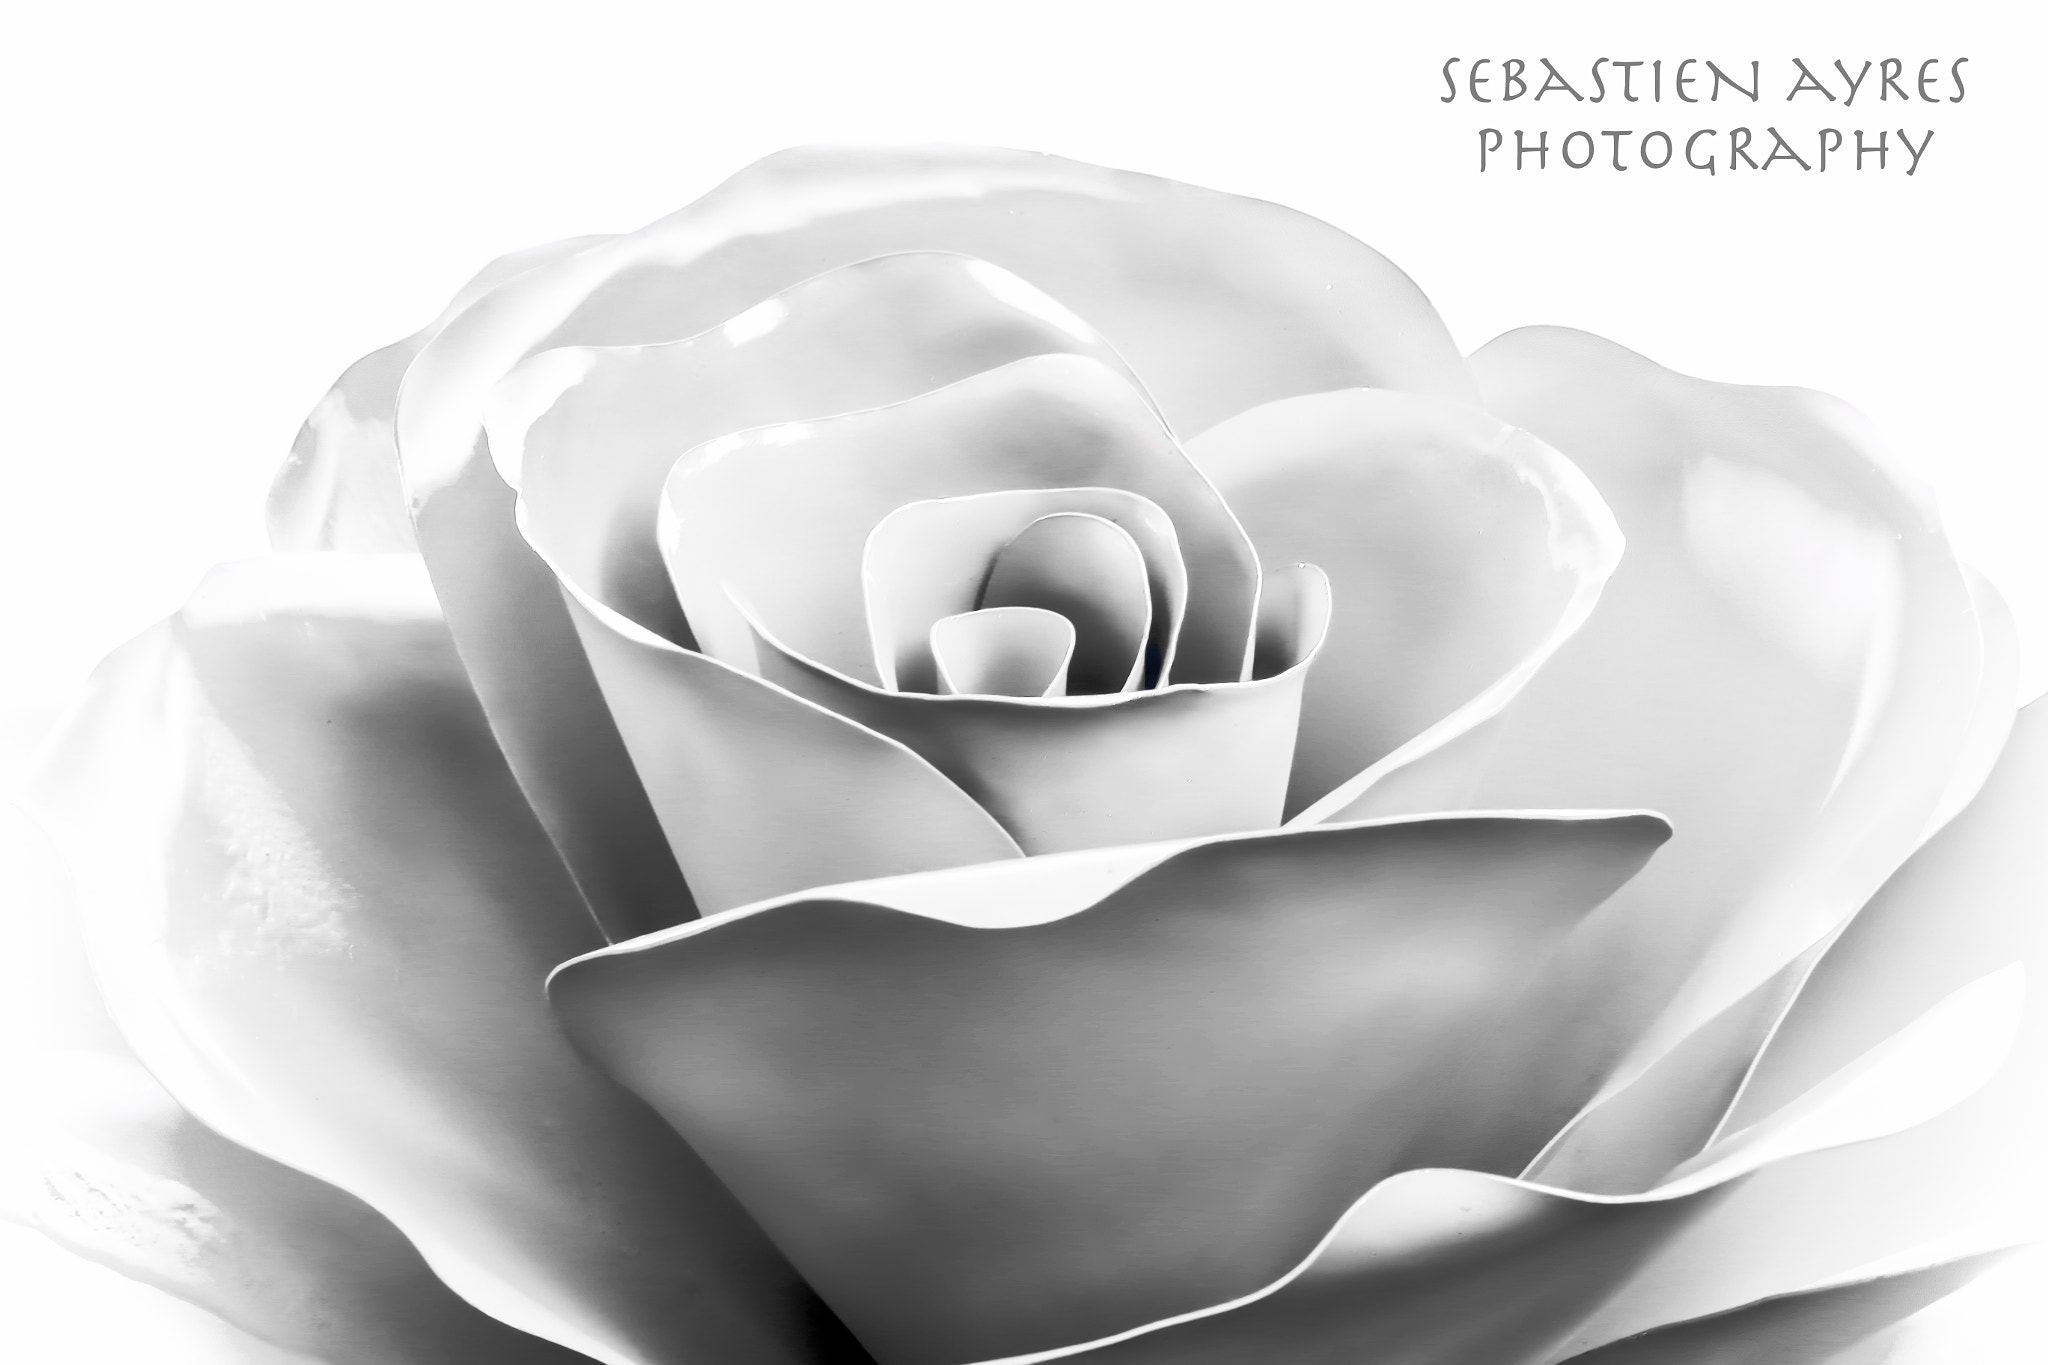 Pentax K-S2 sample photo. Metallic rose photography